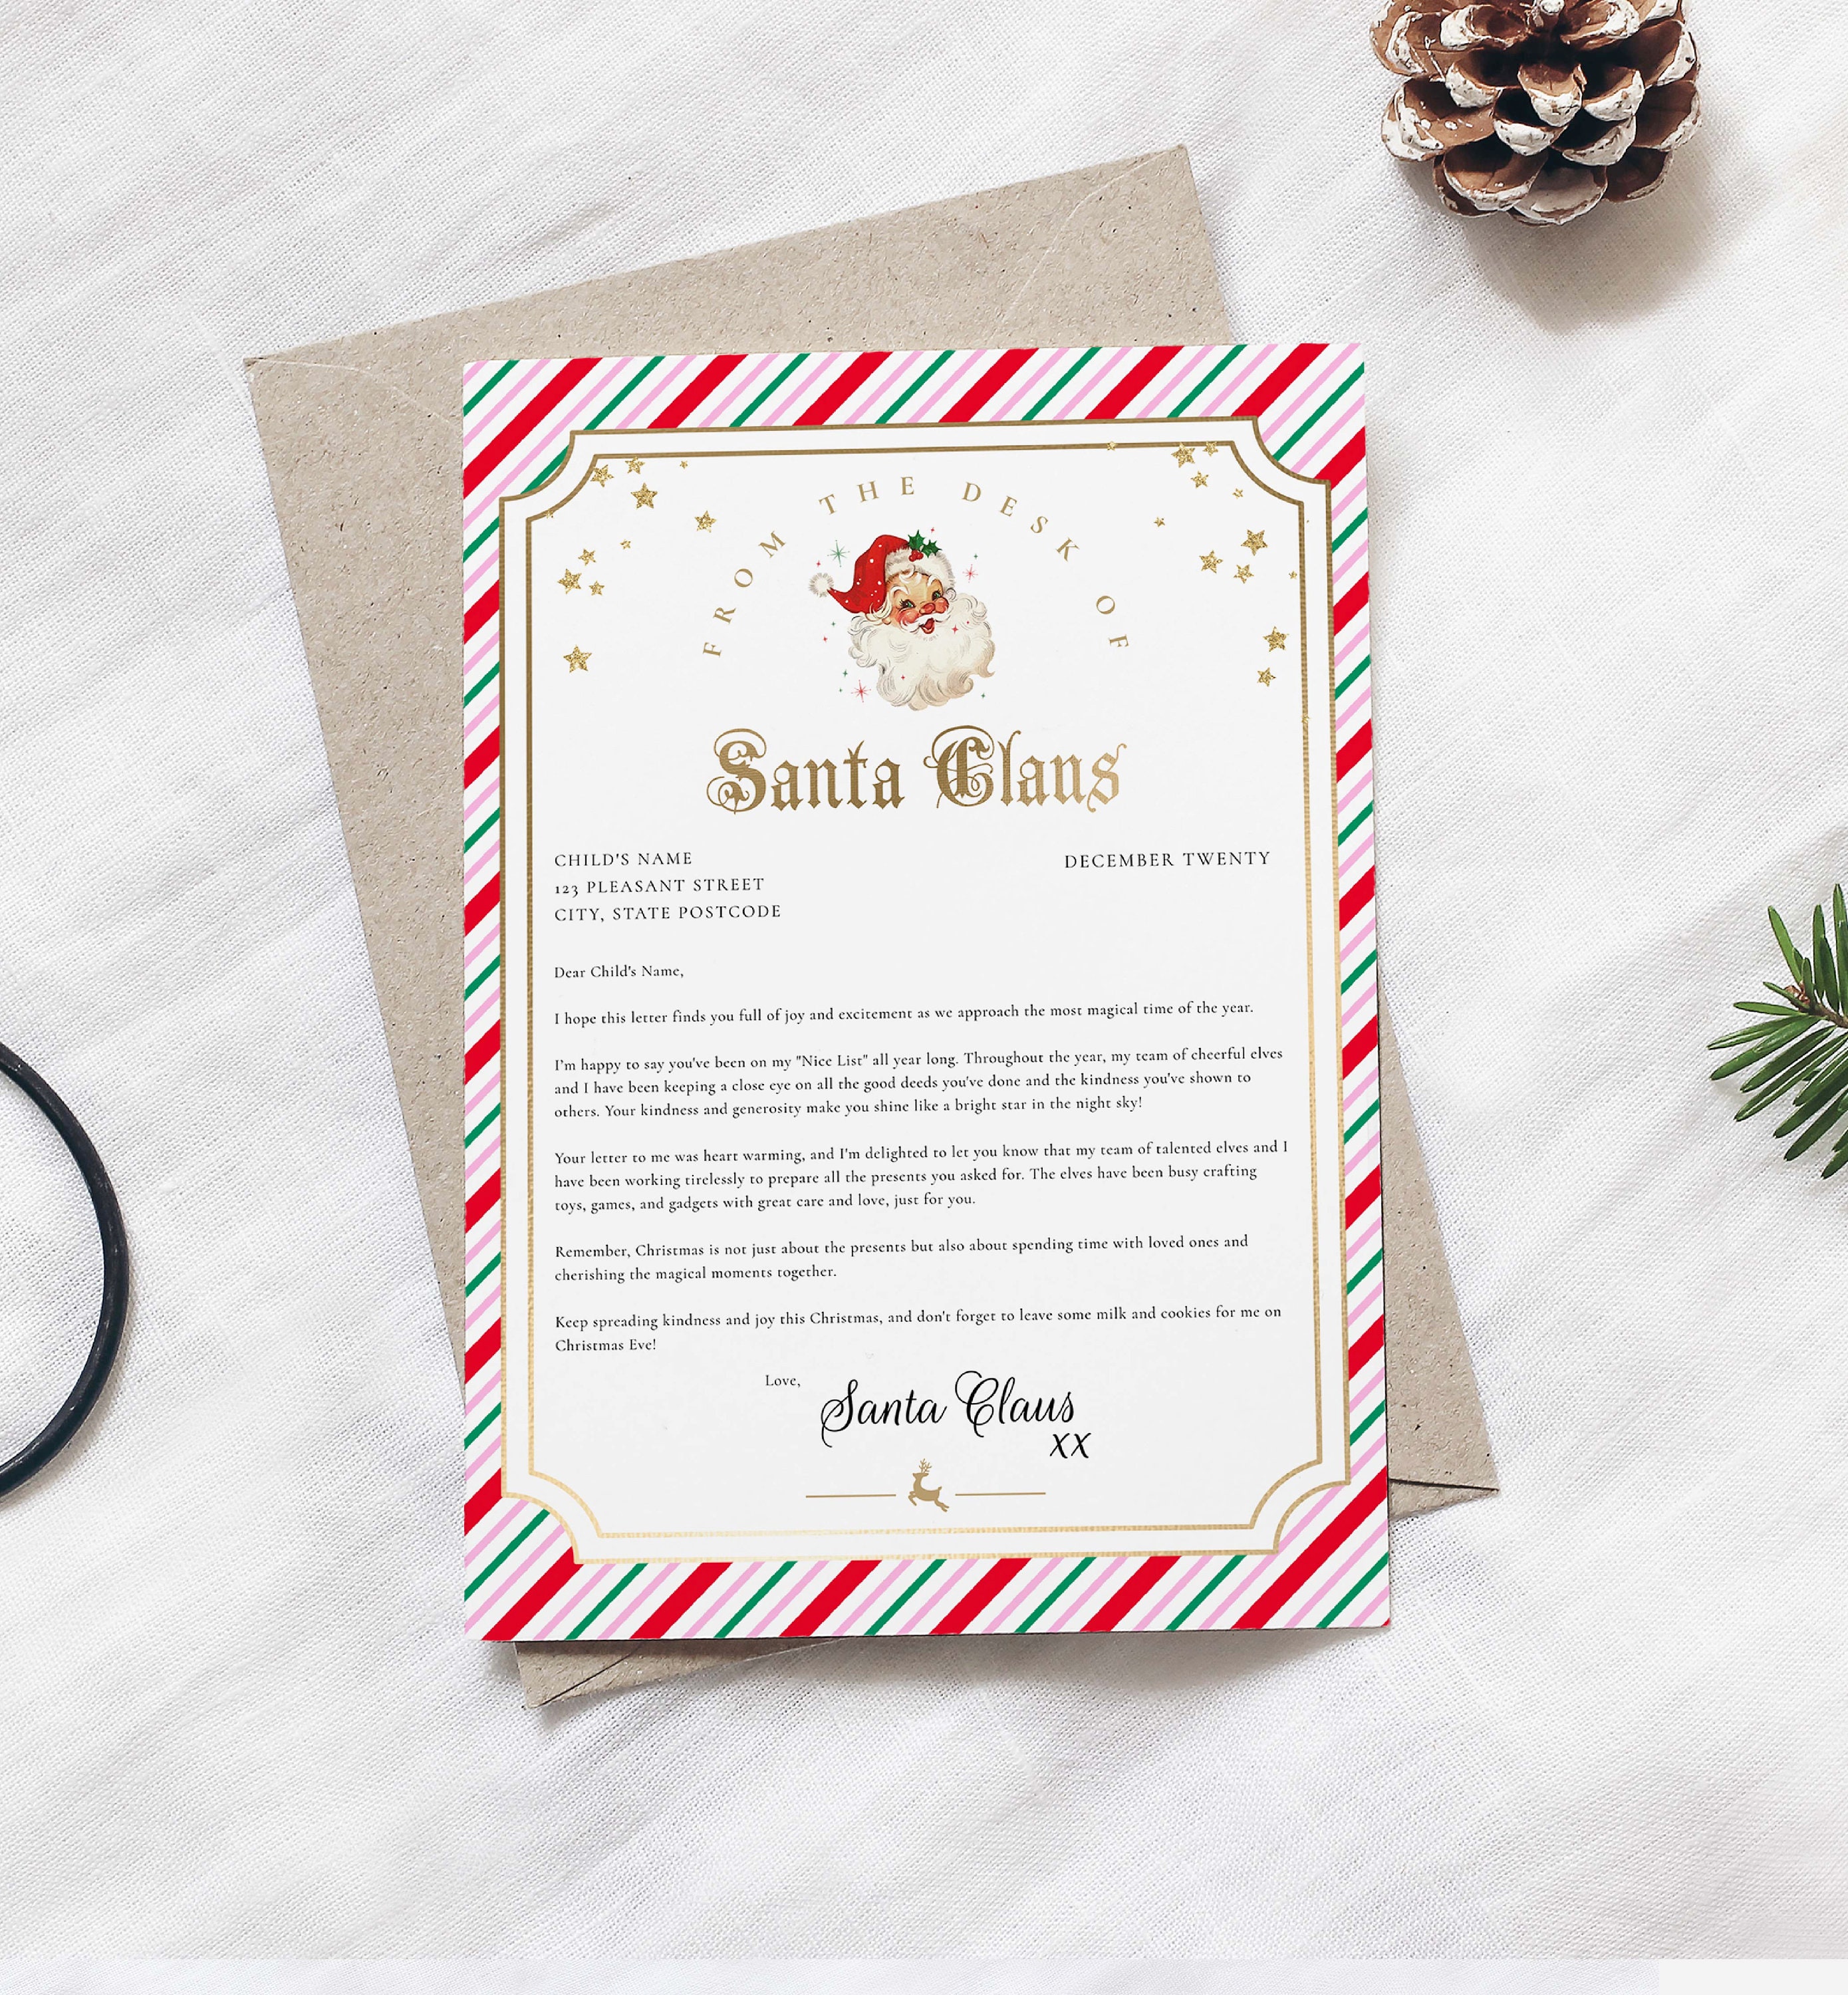 Letters to Santa Mailbox SVG, Cut File, Santas Mailbox, Christmas